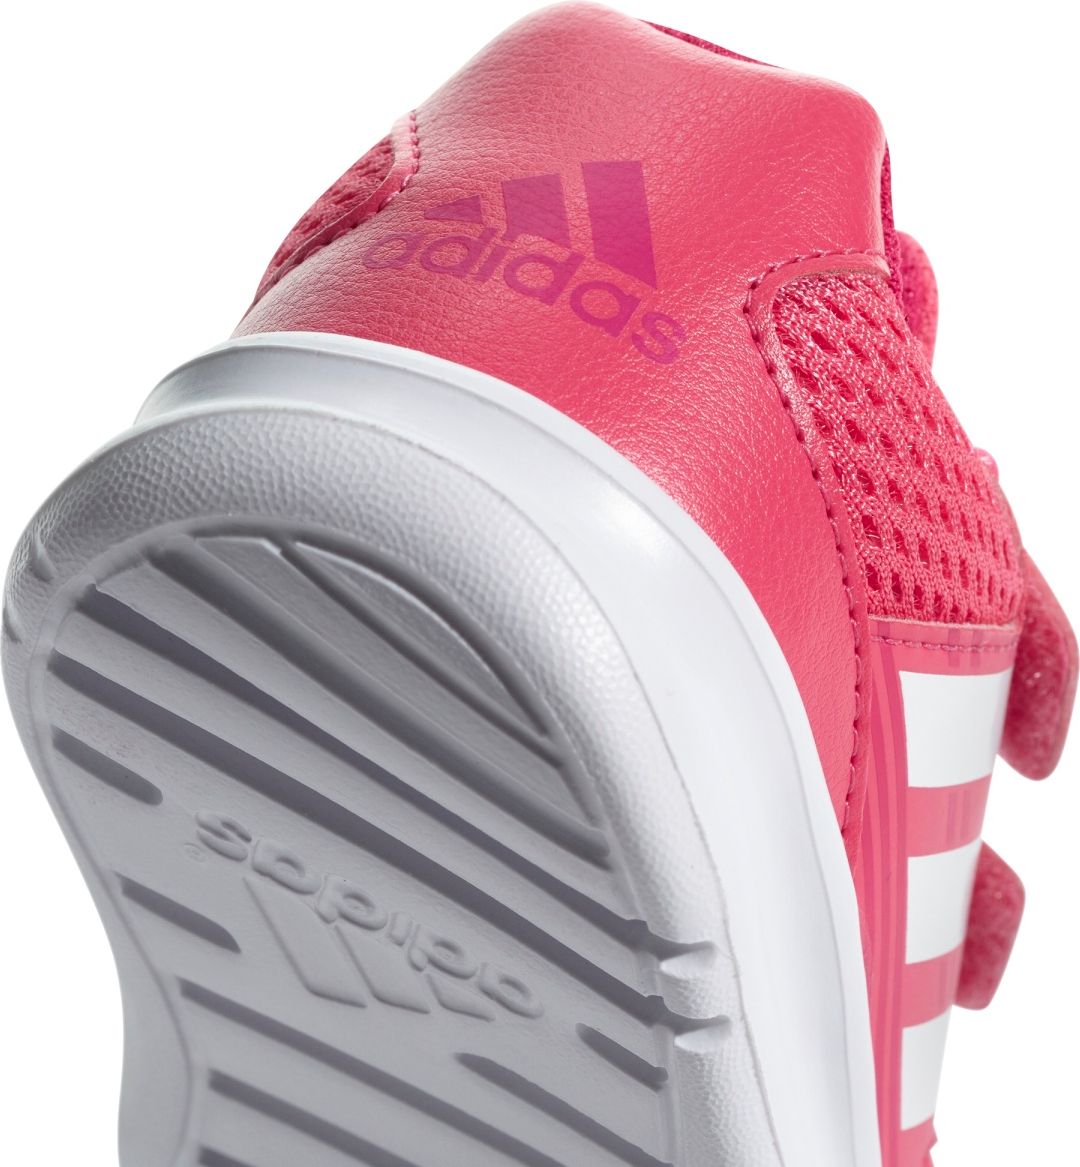 adidas Altarun Cf I růžová EUR 26 - obrázek 4